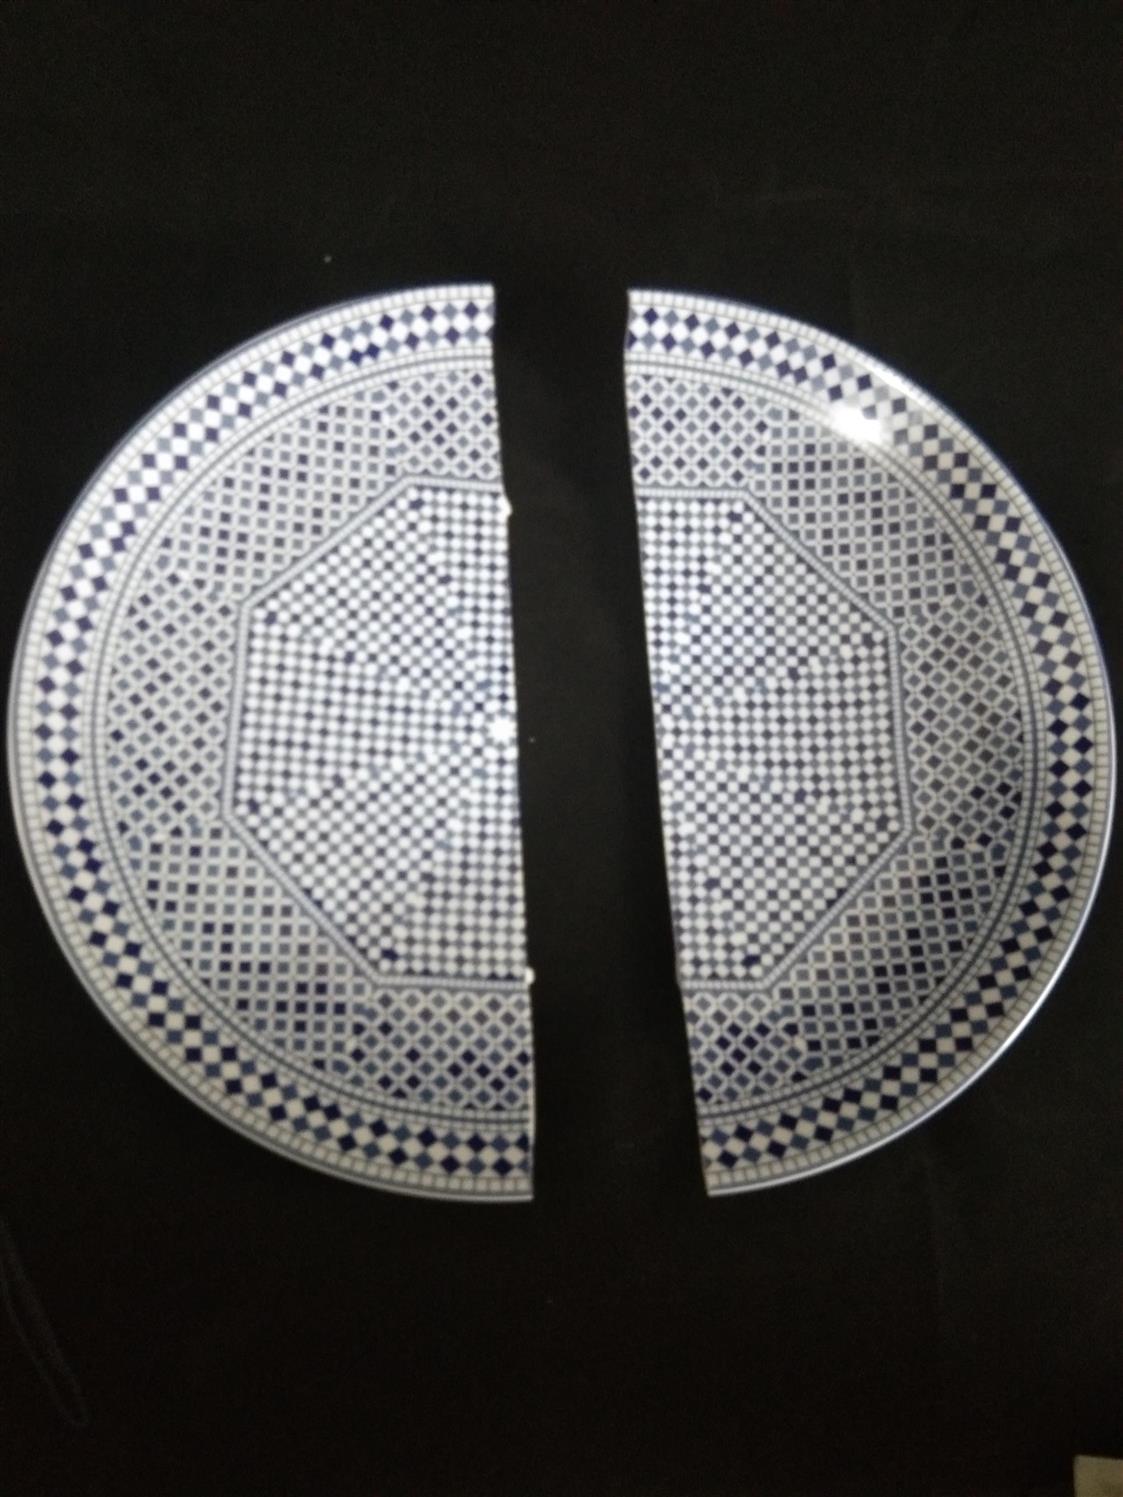 乌鲁木齐现代陶瓷破损无痕修复 南京美瓷工艺品有限公司